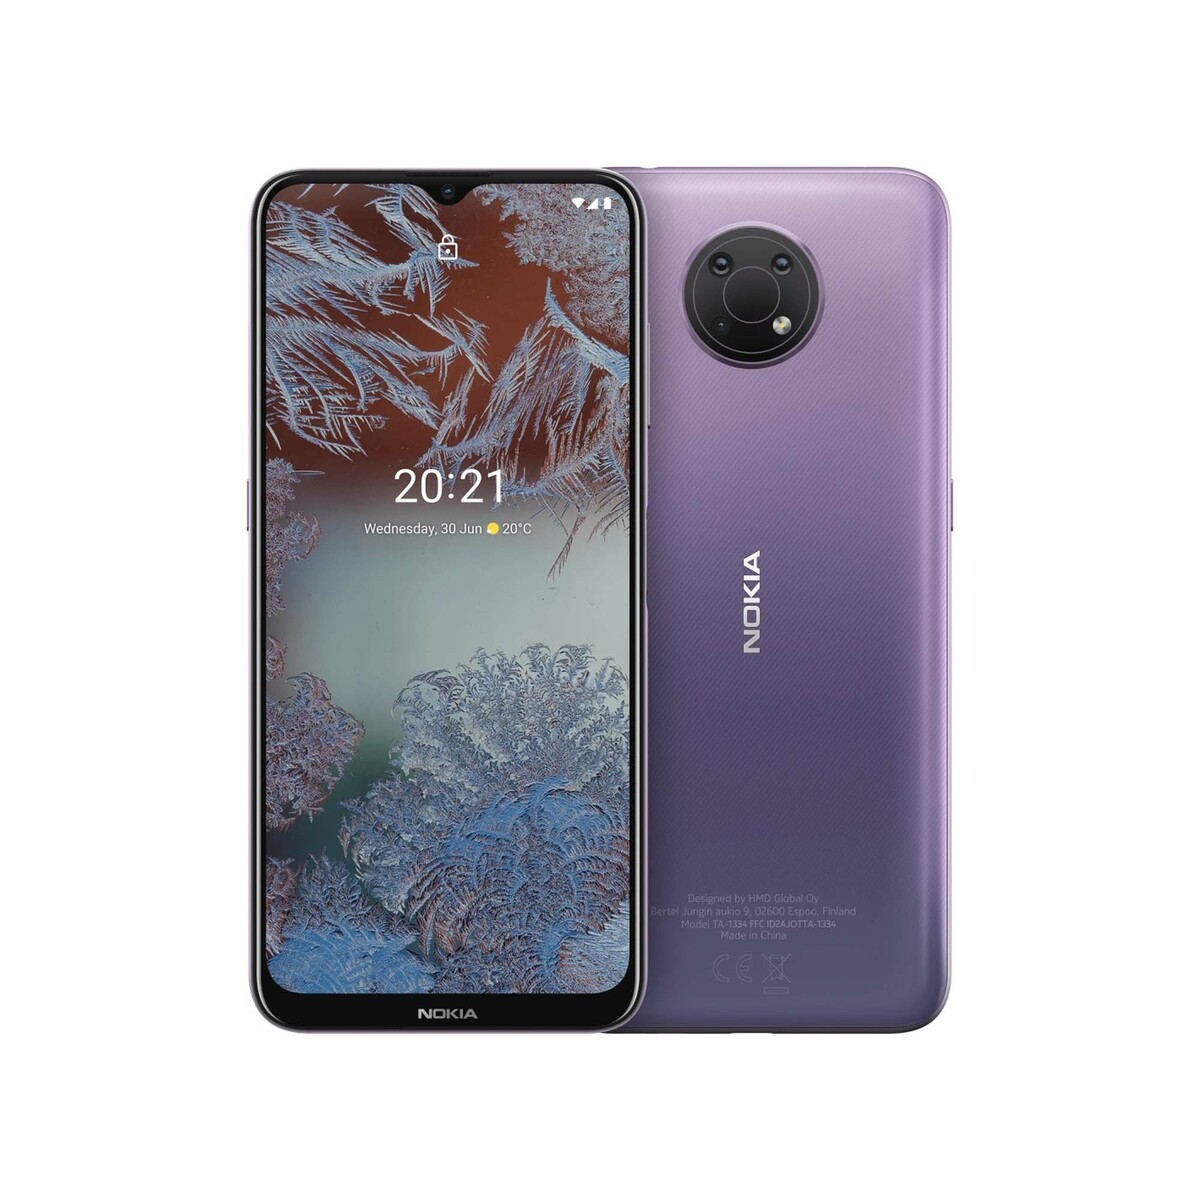 Price ksa in g10 nokia Nokia G10